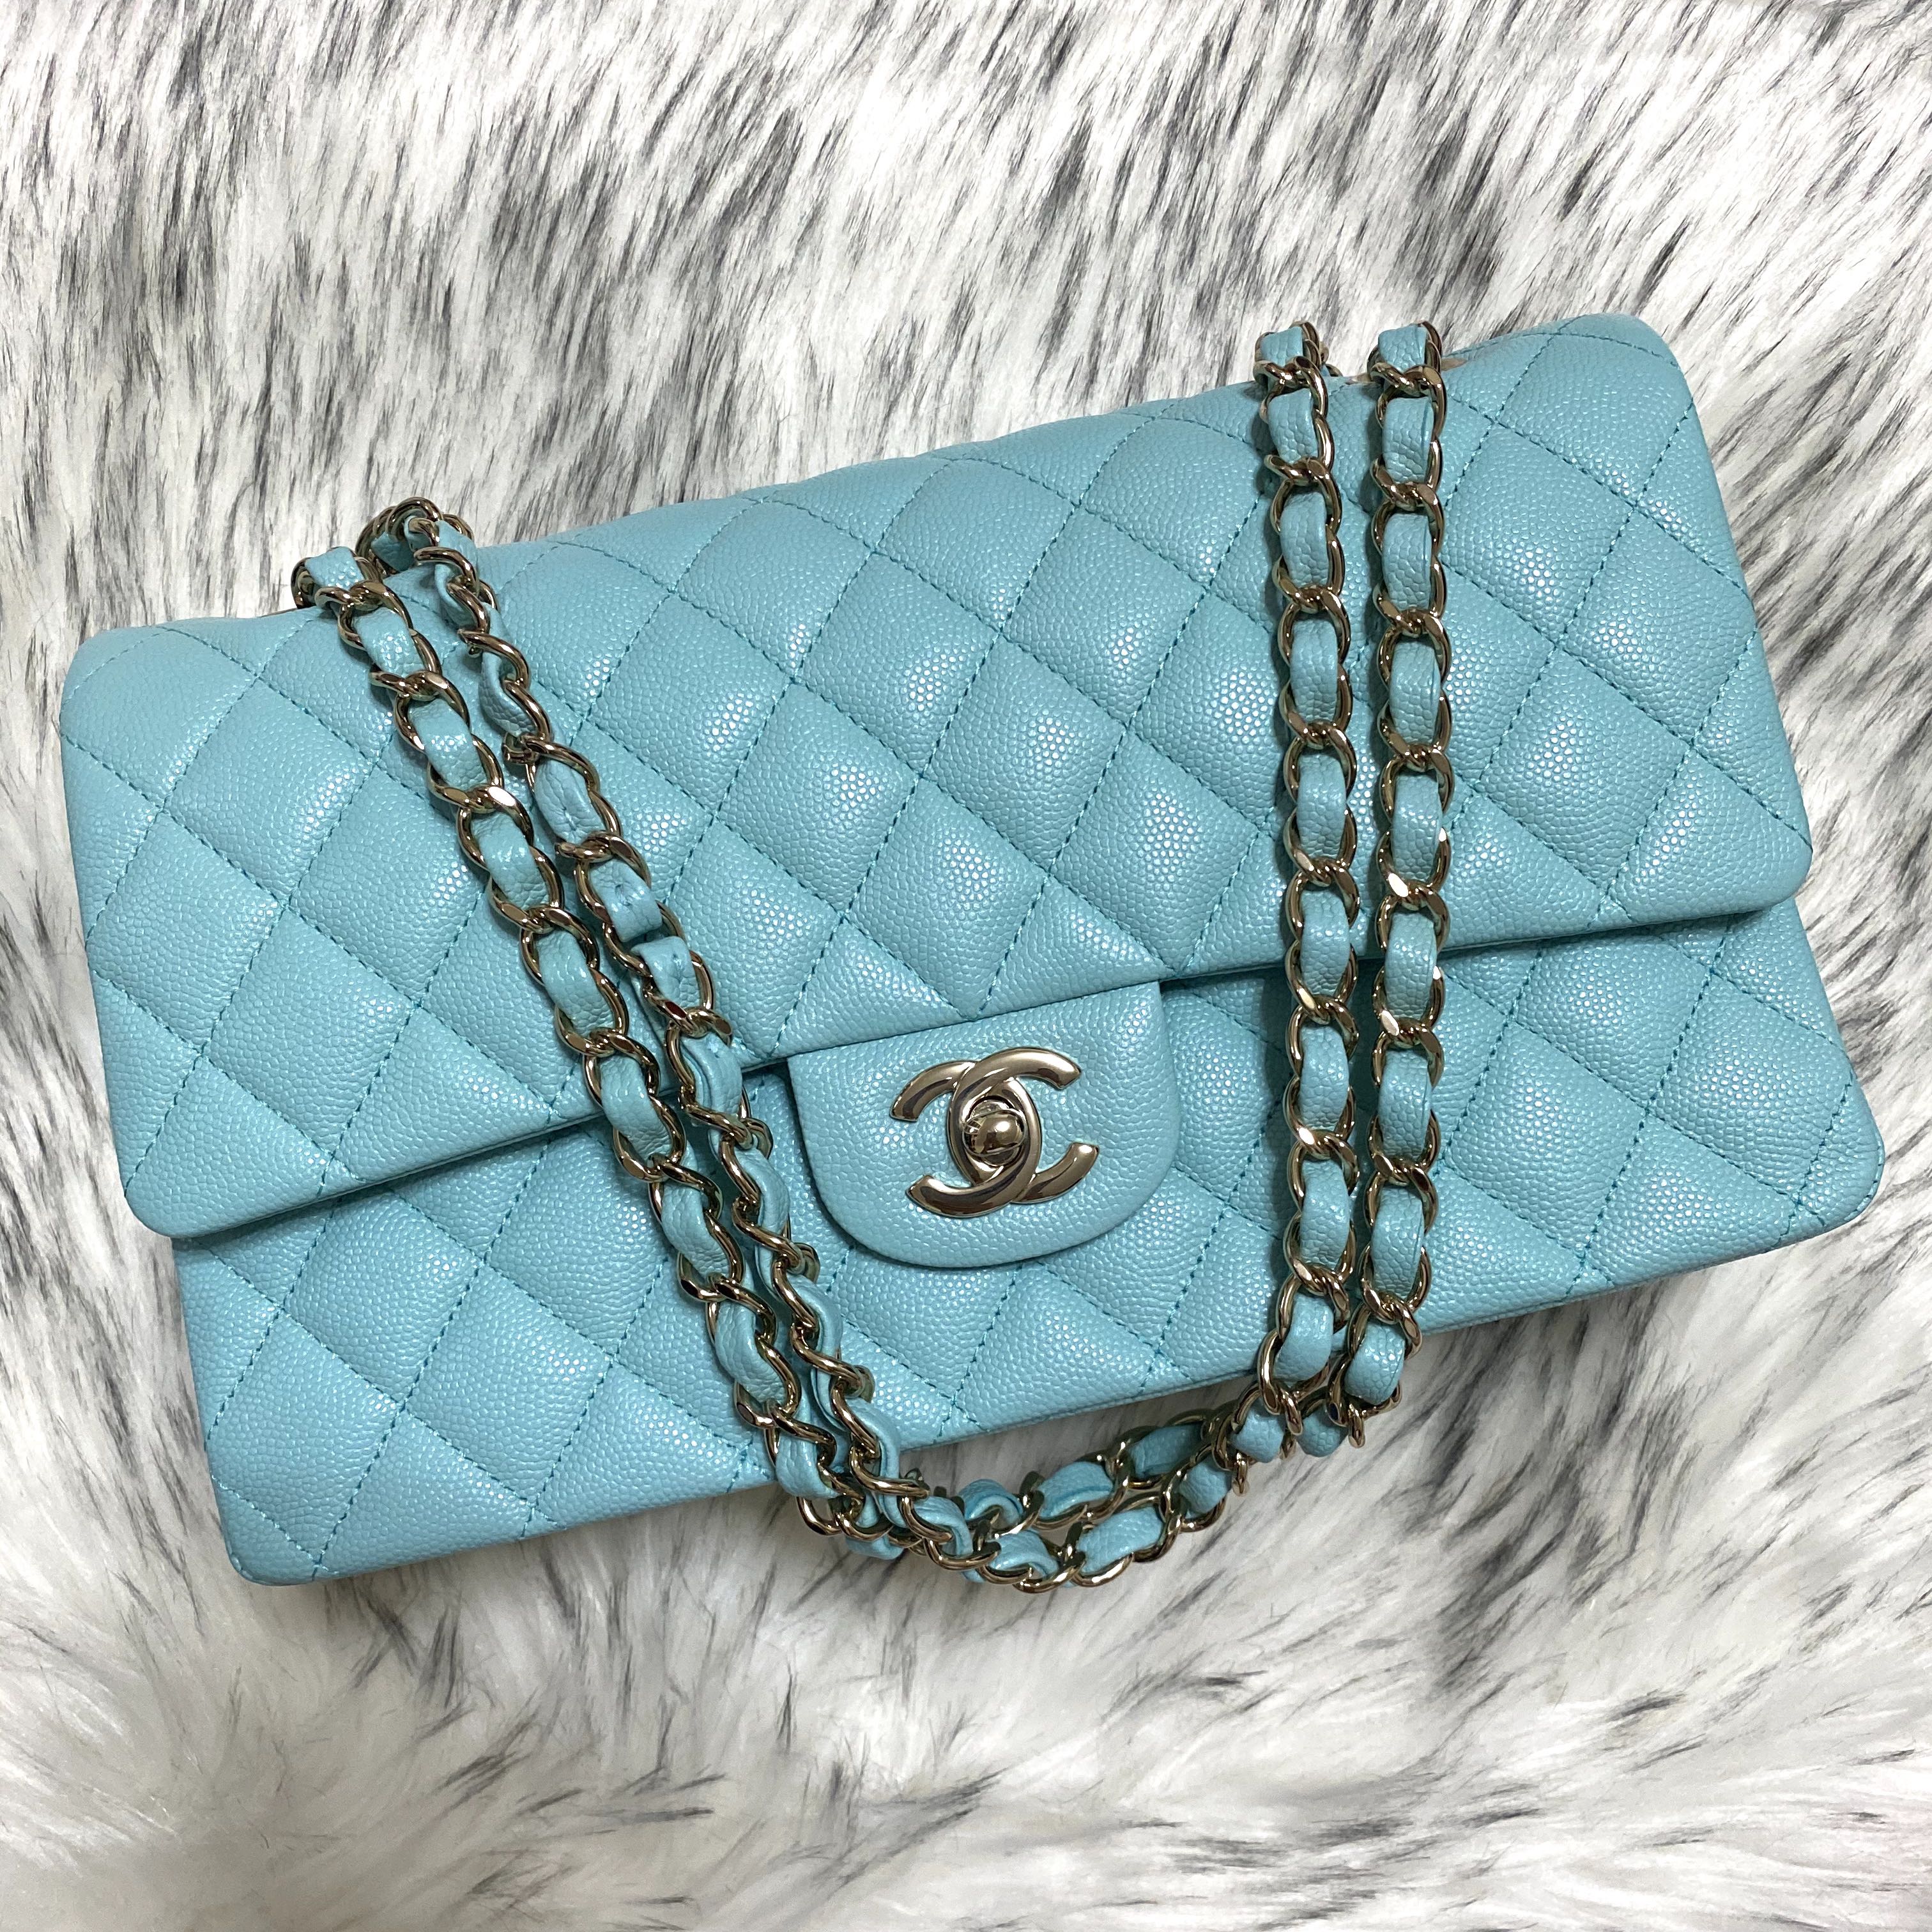 Chanel Wallet Tiffany Blue 19C